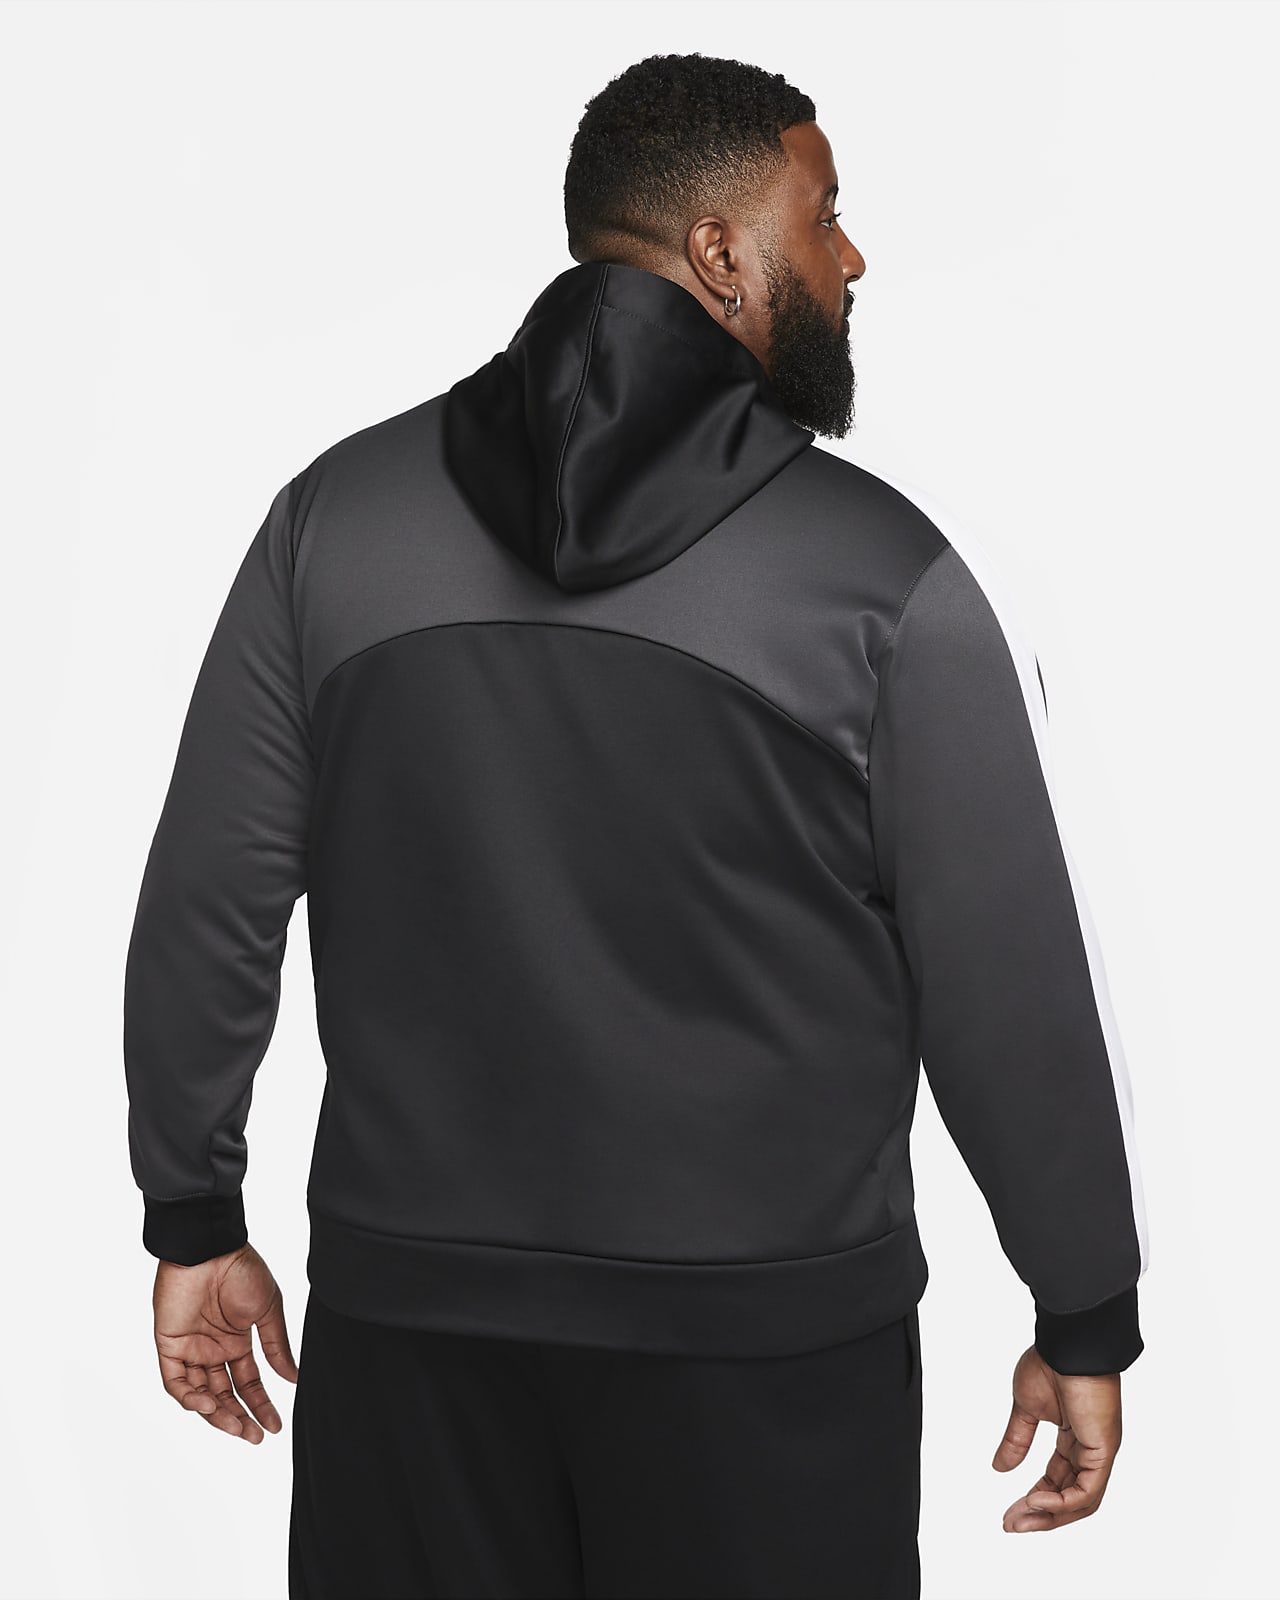 Nike Therma-FIT Hoodies & Sweatshirts. Nike CA